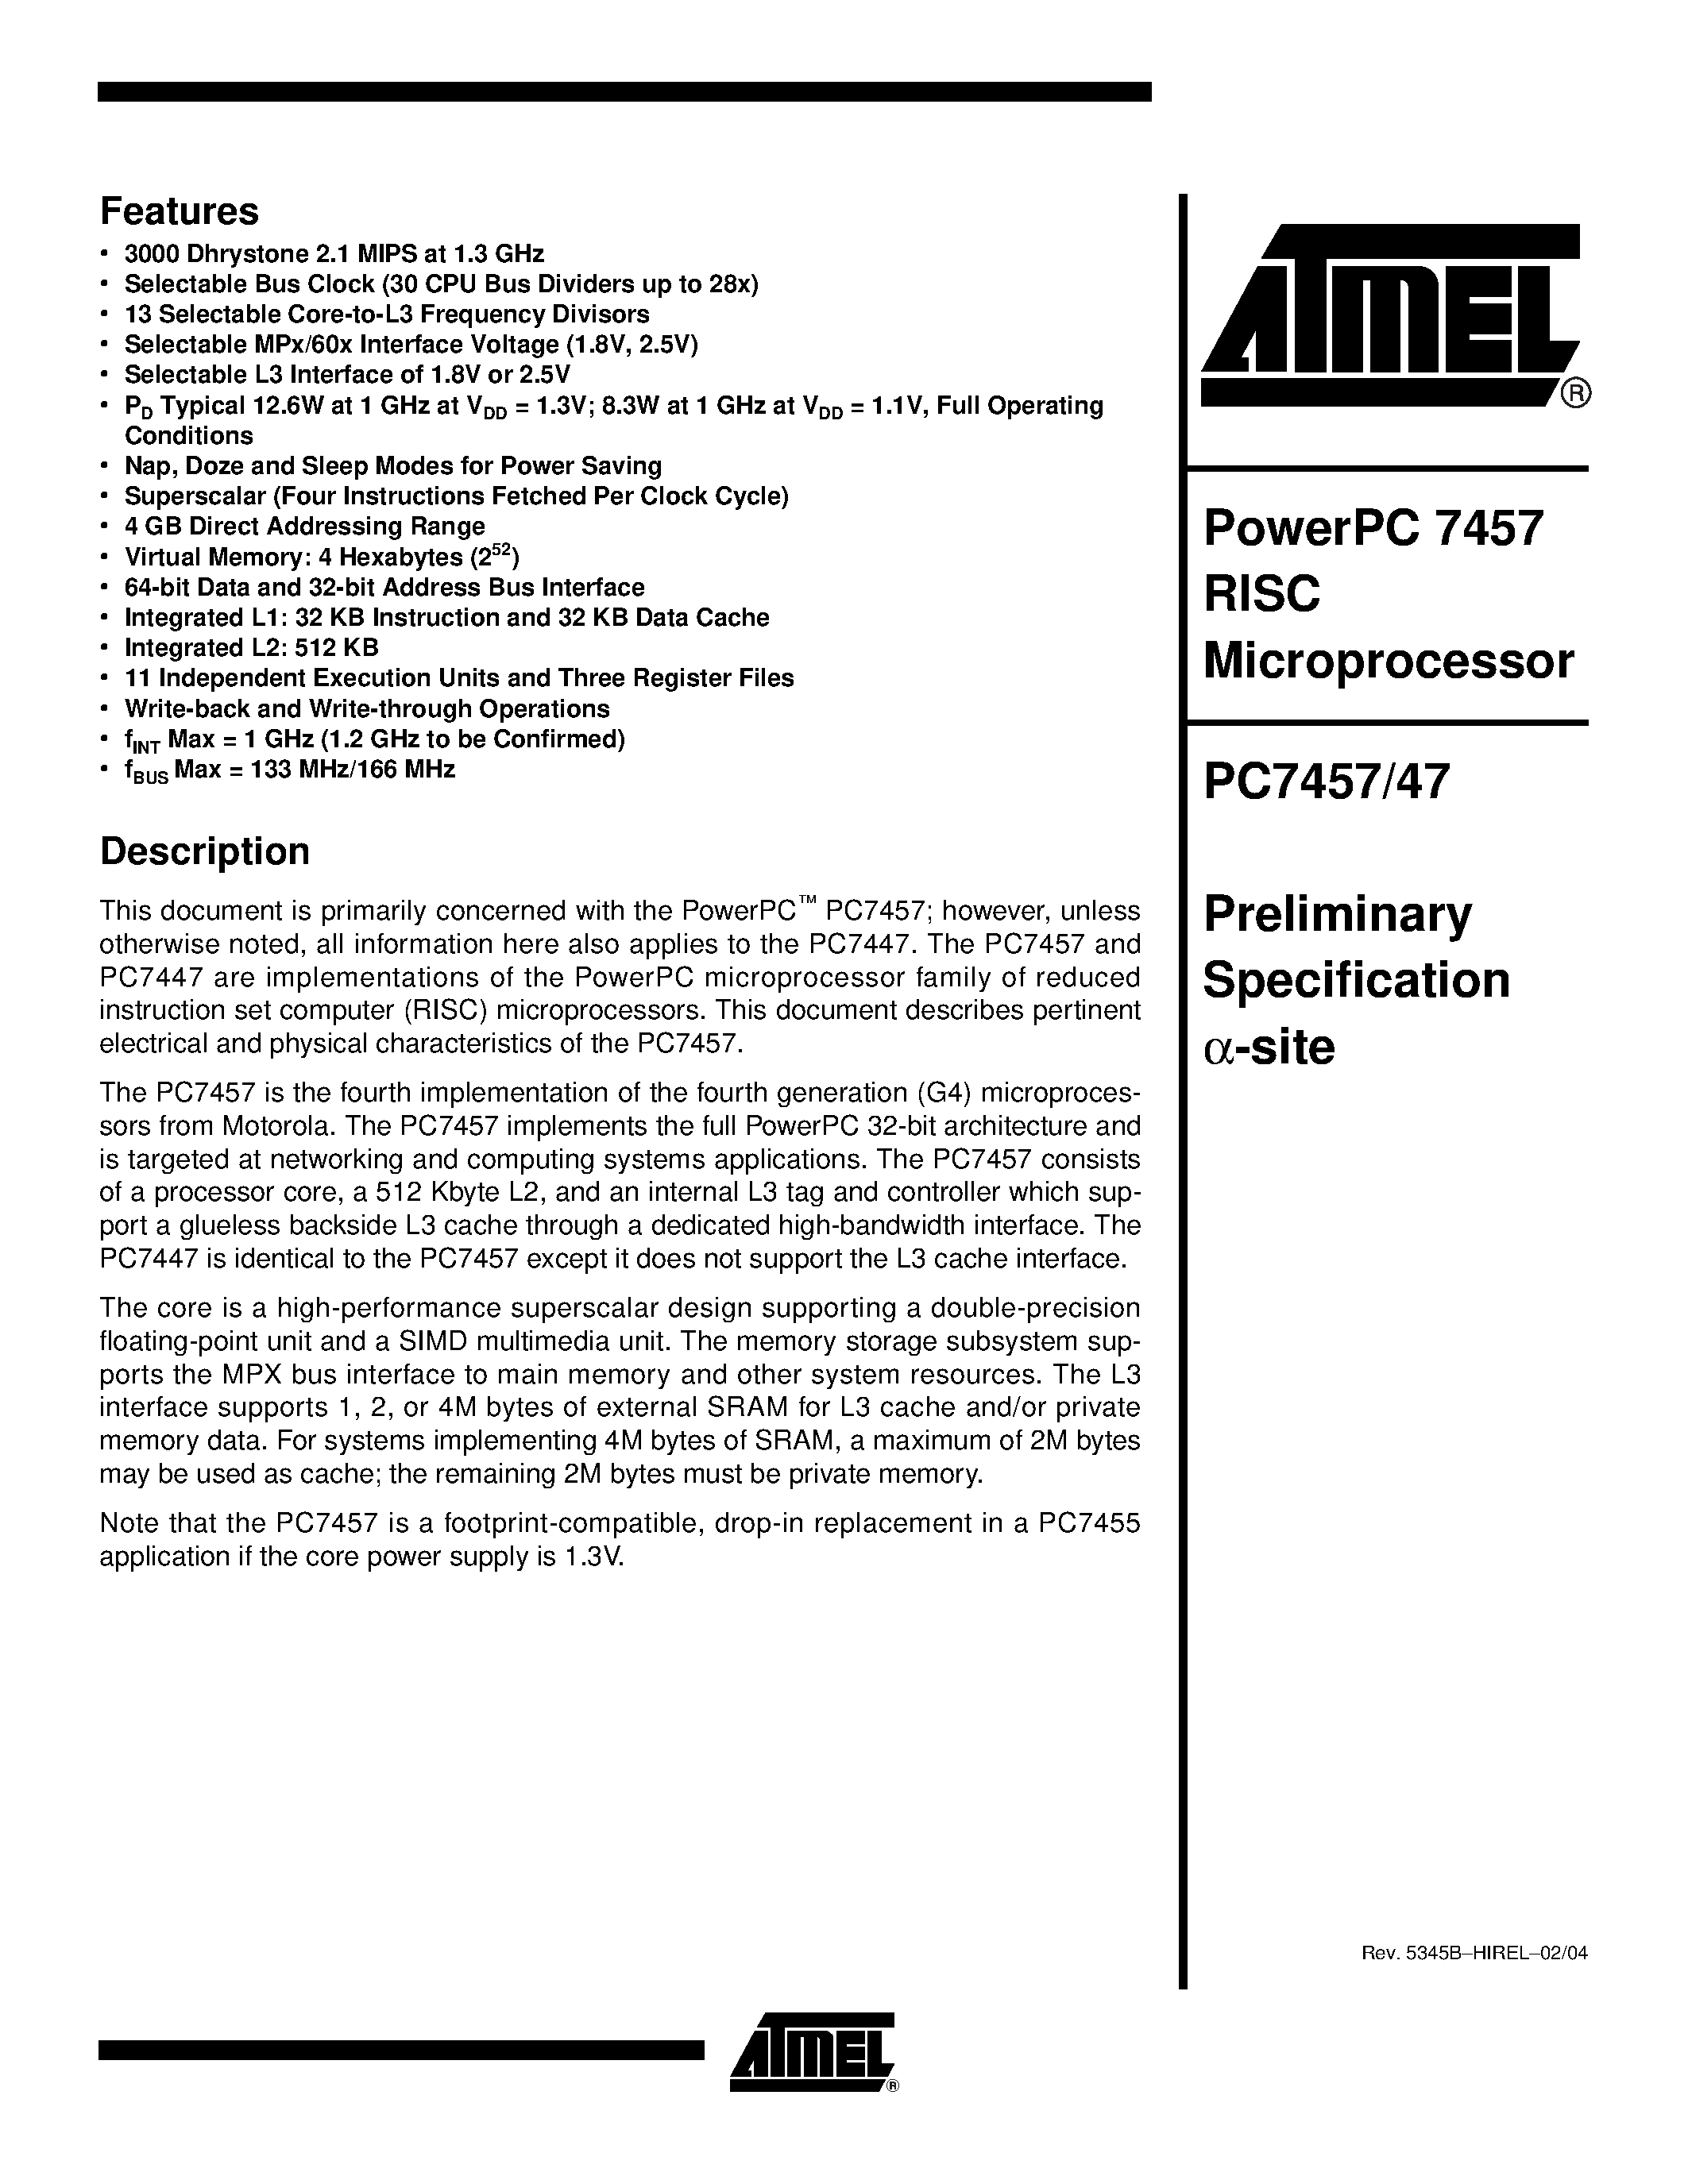 Даташит PC7447 - (PC7447 / PC7457) PowerPC 7457 RISC Microprocessor страница 1